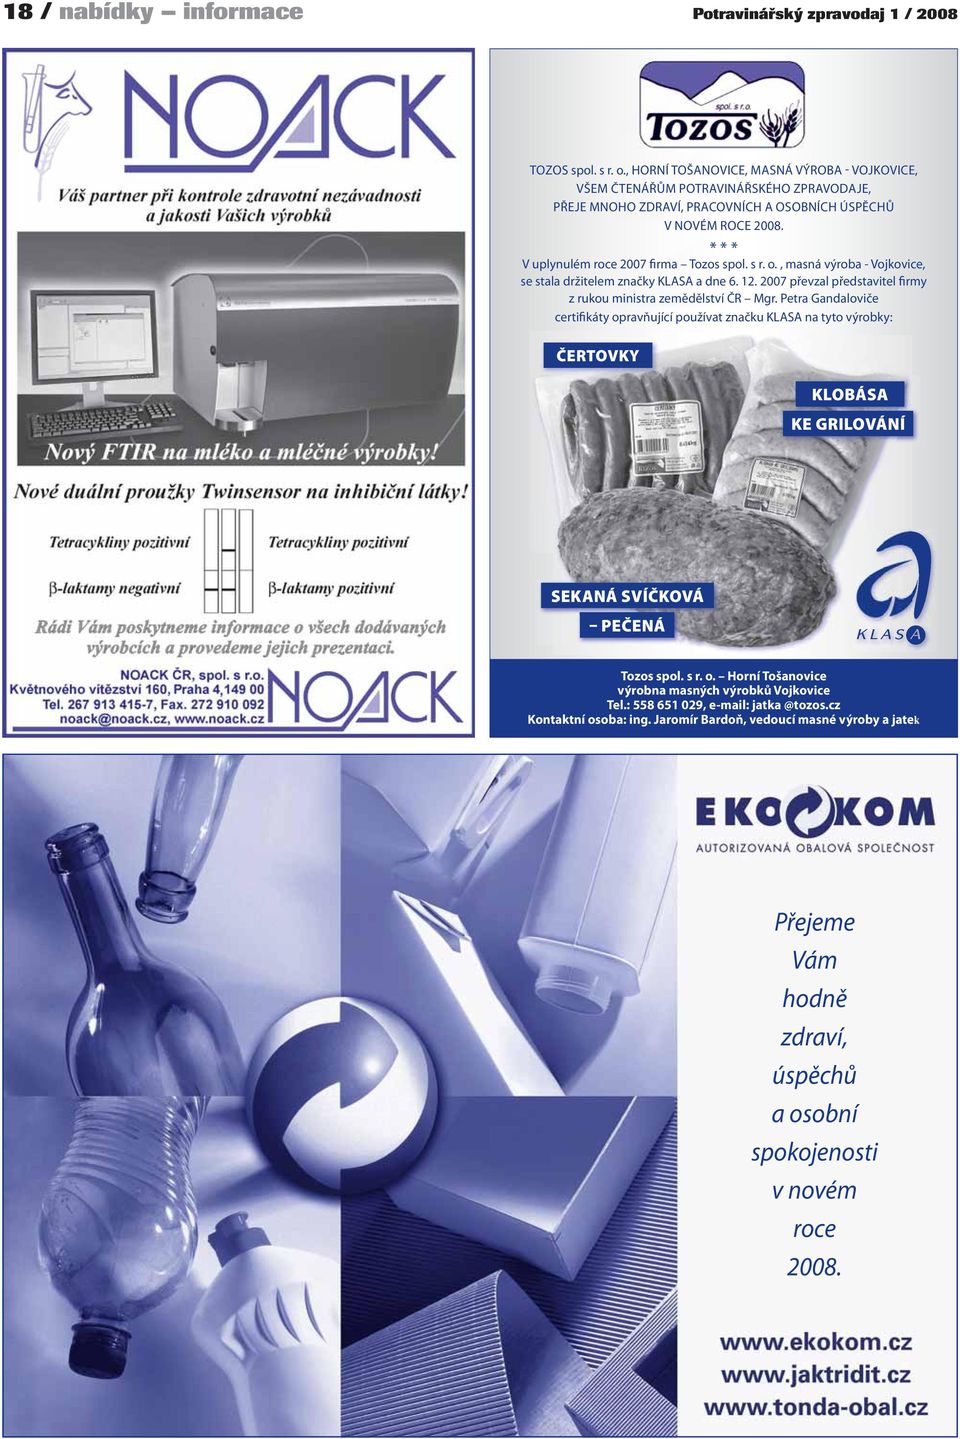 ČERTOVKY * * * V uplynulém roce 2007 firma Tozos spol. s r. o., masná výroba - Vojkovice, se stala držitelem značky KLASA a dne 6. 12.